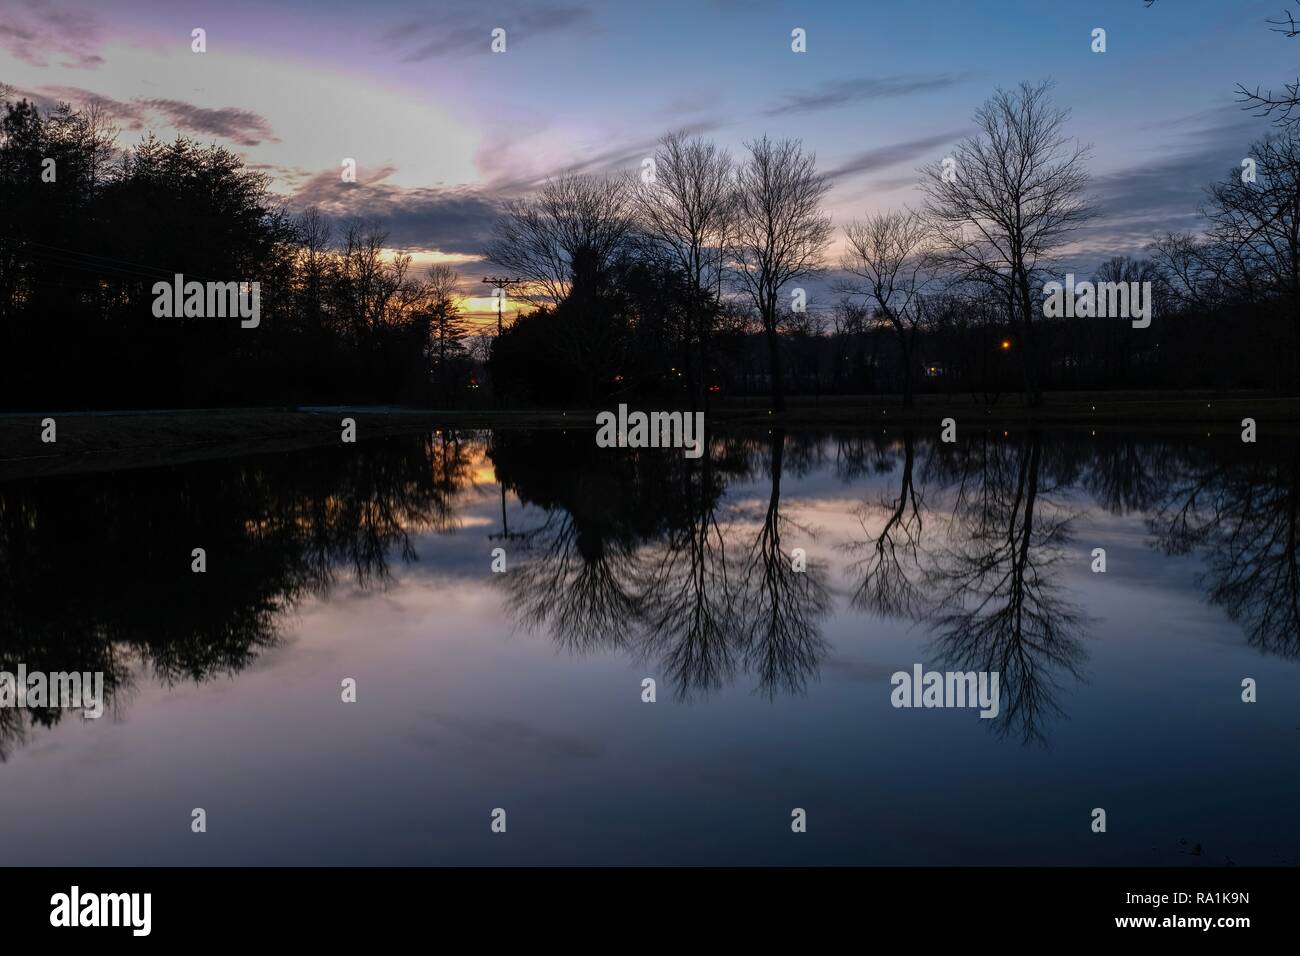 Rejets miroir sur la surface d'un étang calme au coucher du soleil à Tracy City, Texas Banque D'Images